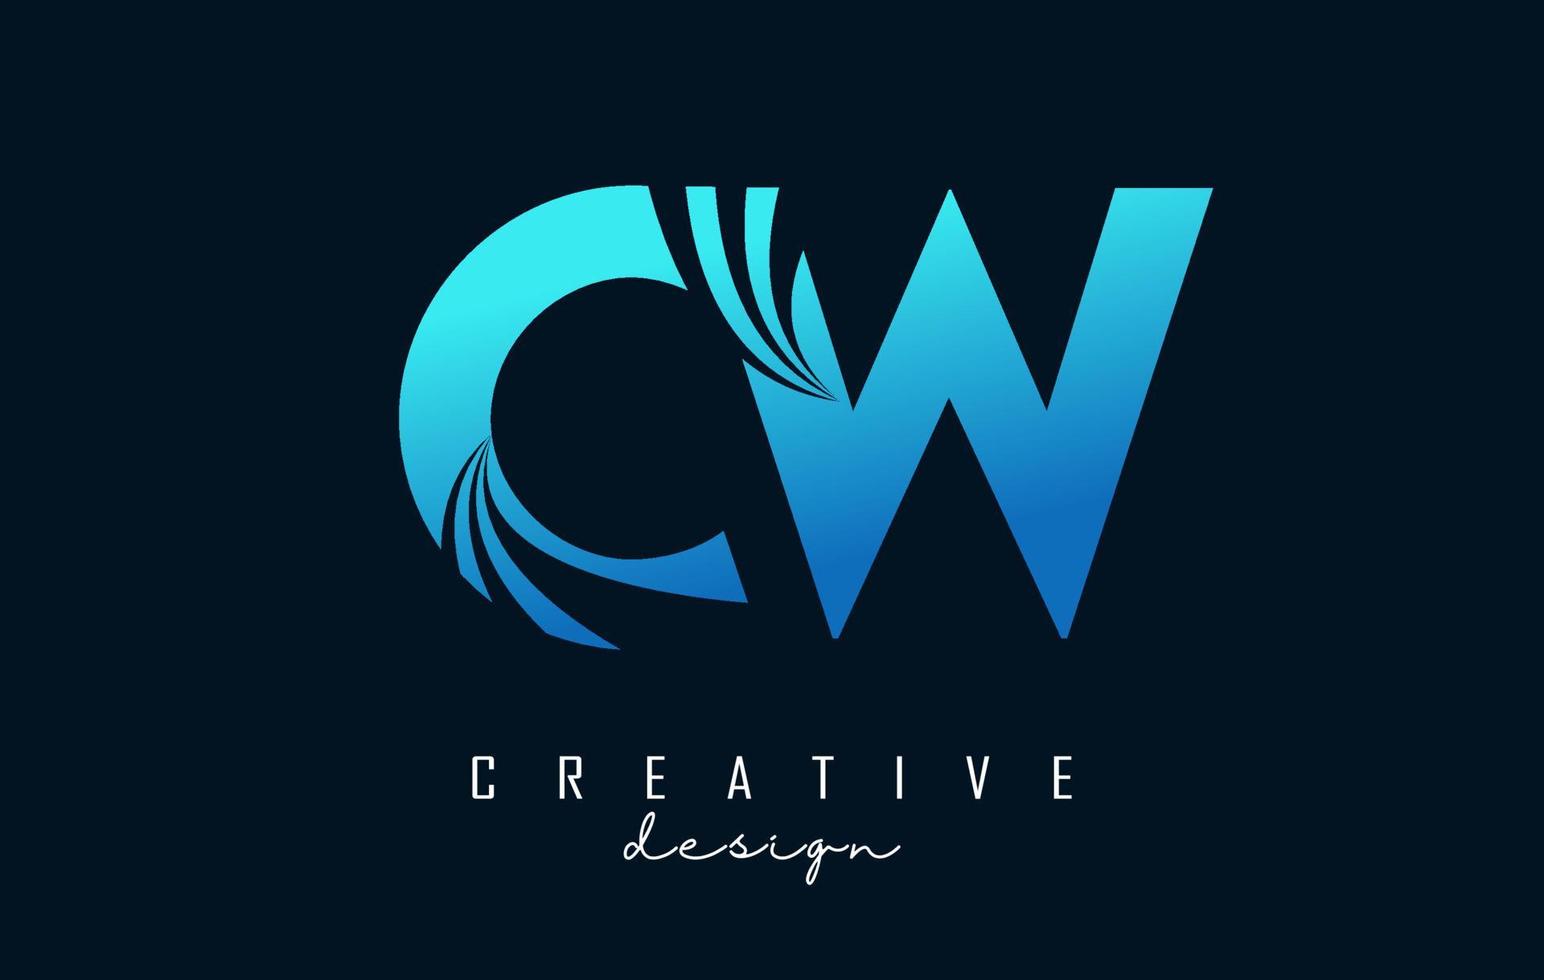 letras azuis criativas cw cw logotipo com linhas principais e design de conceito de estrada. letras com desenho geométrico. vetor